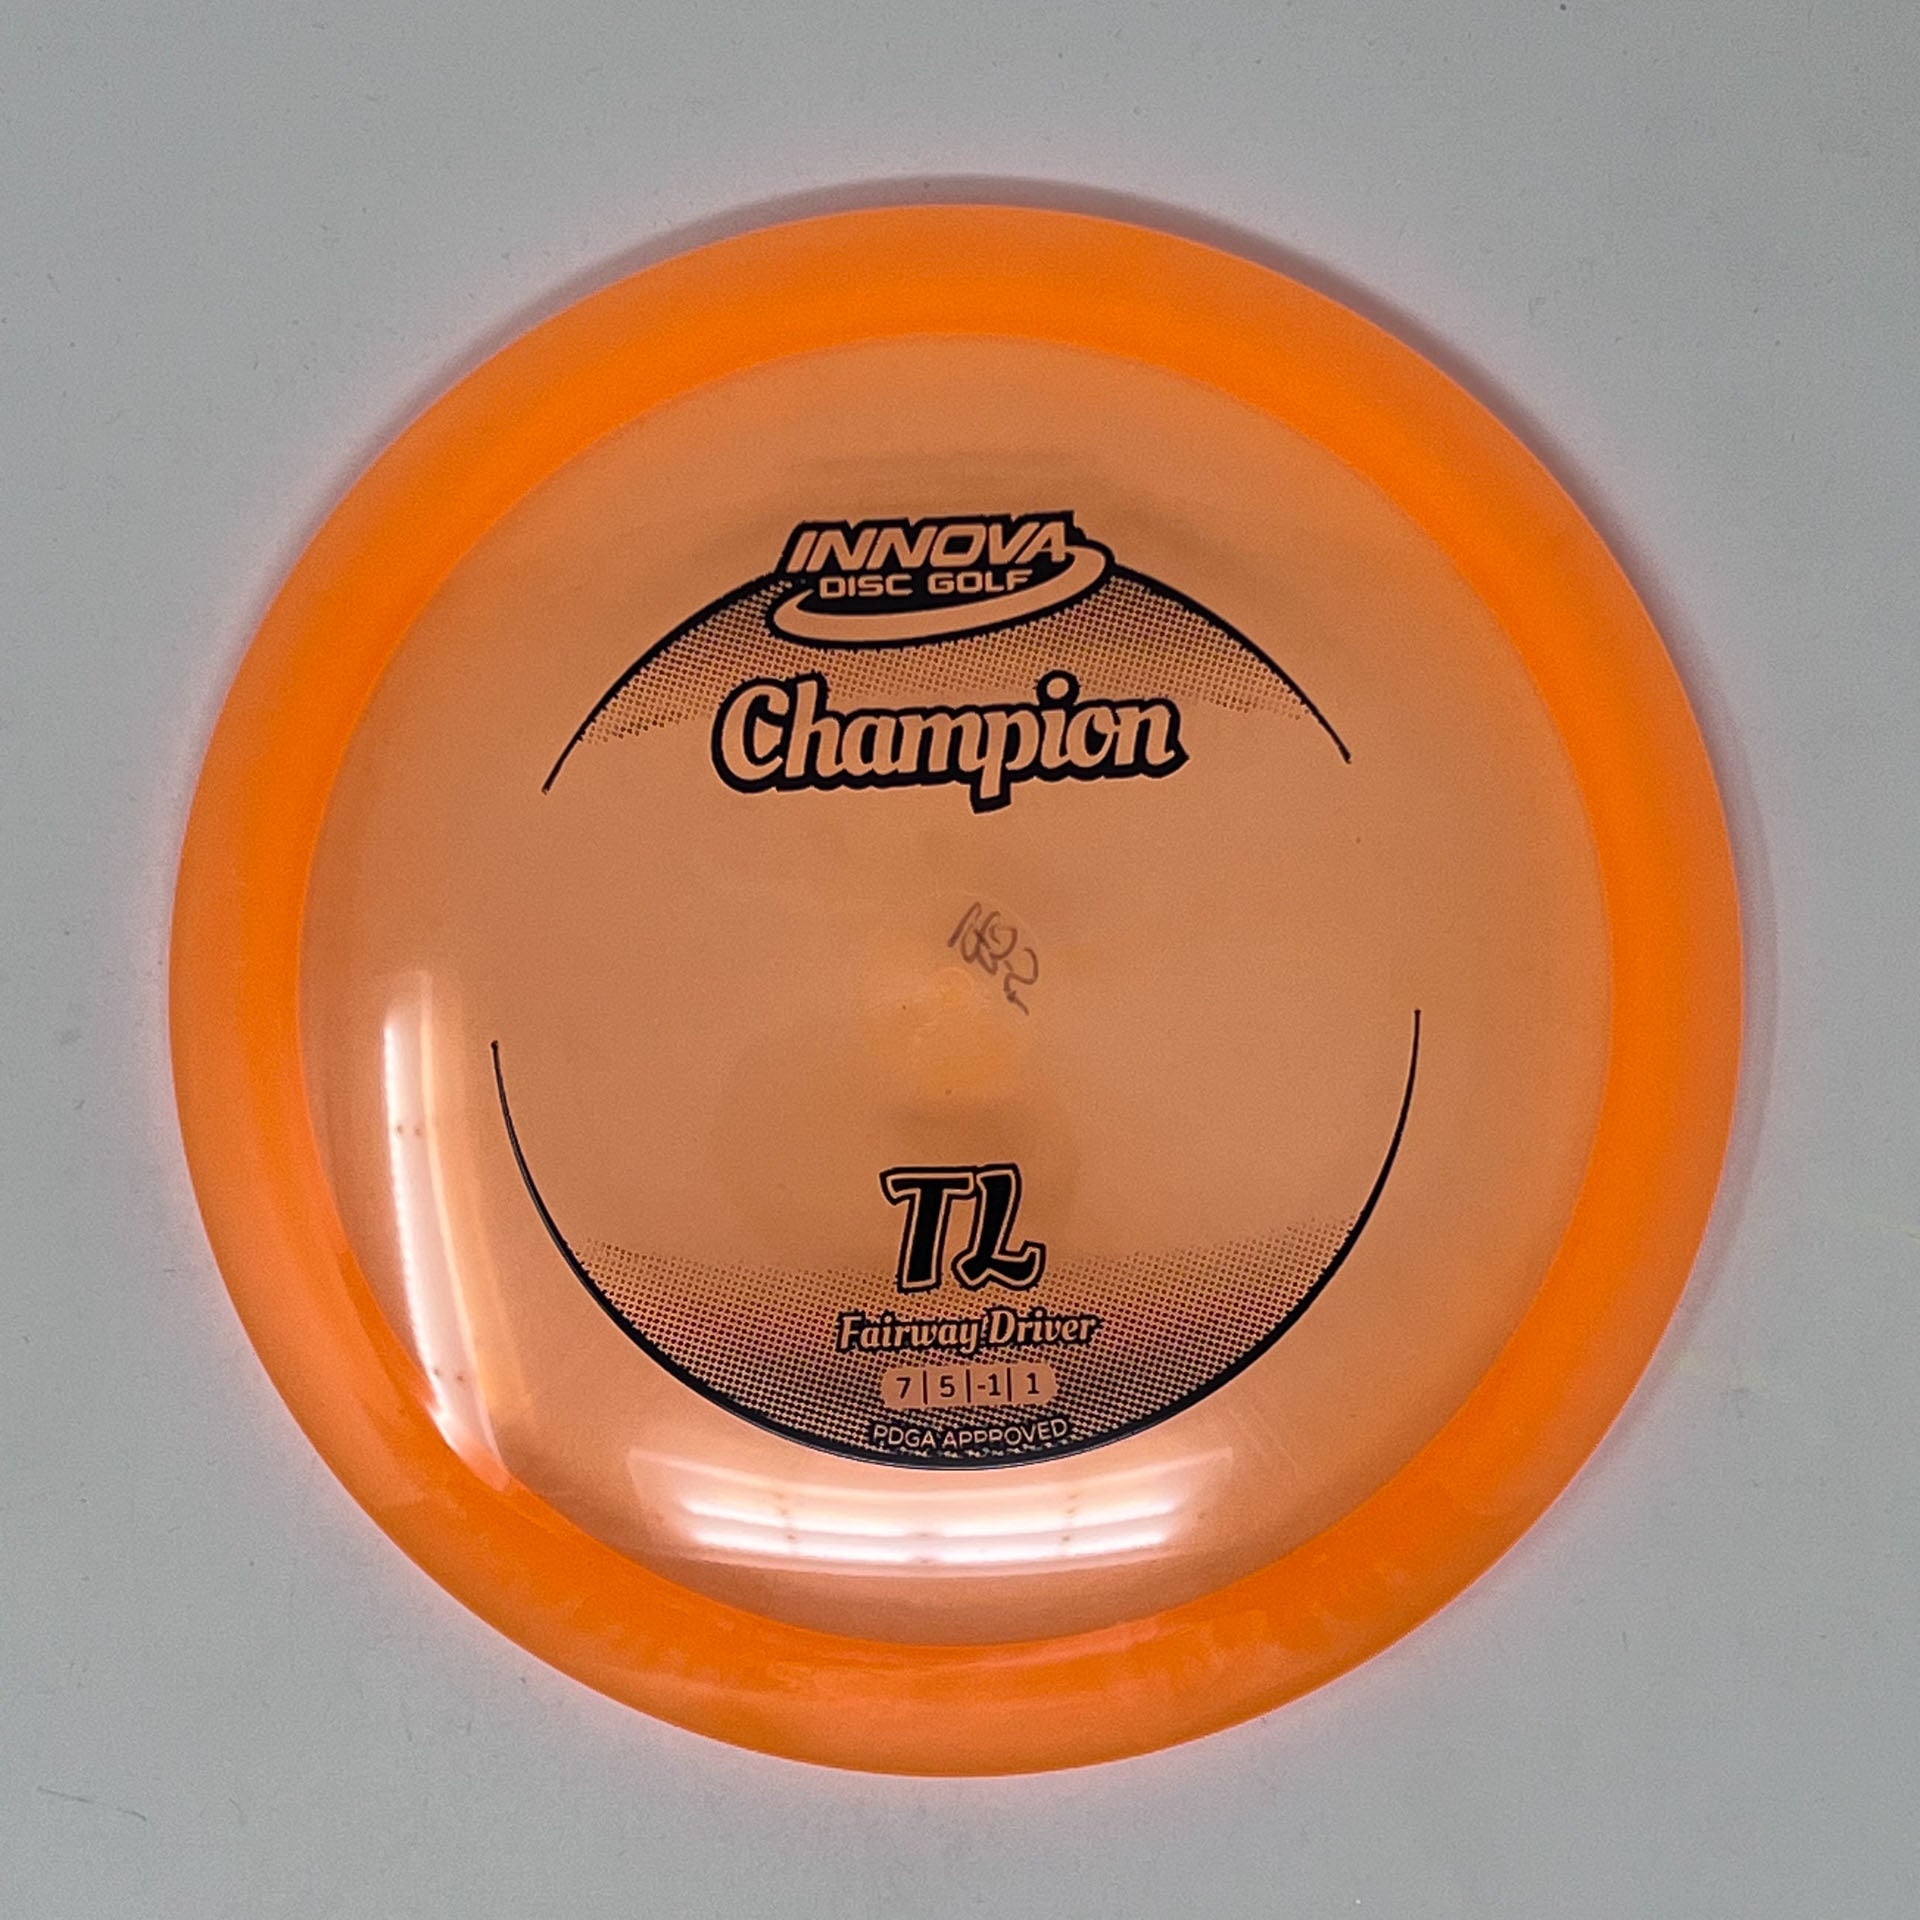 Innova Champion TL